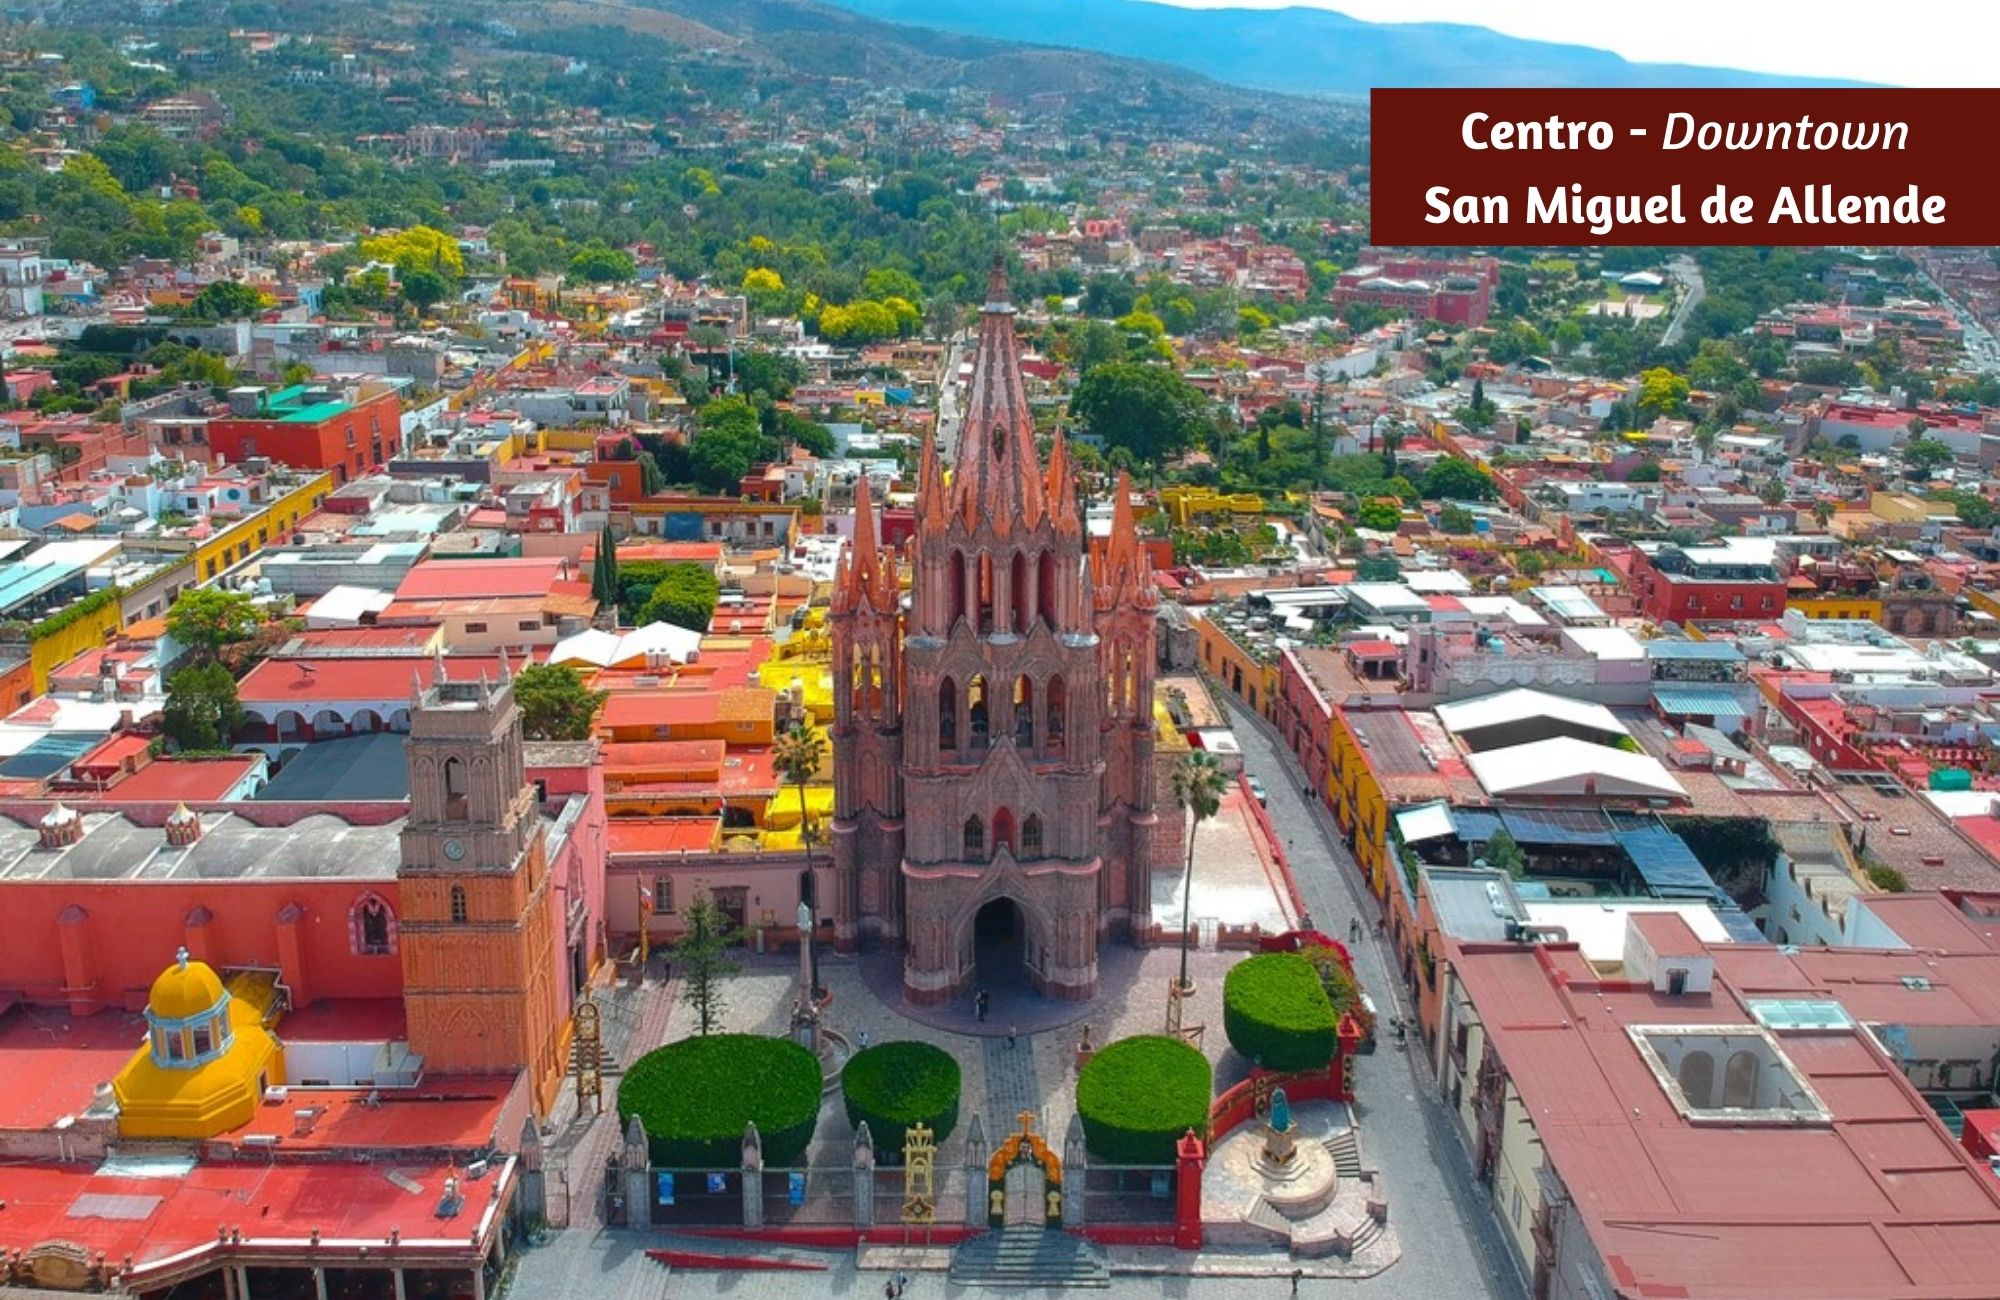 17,815 m2, m2, helipuerto, lago, caballerizas y mas en venta San Miguel de Allende